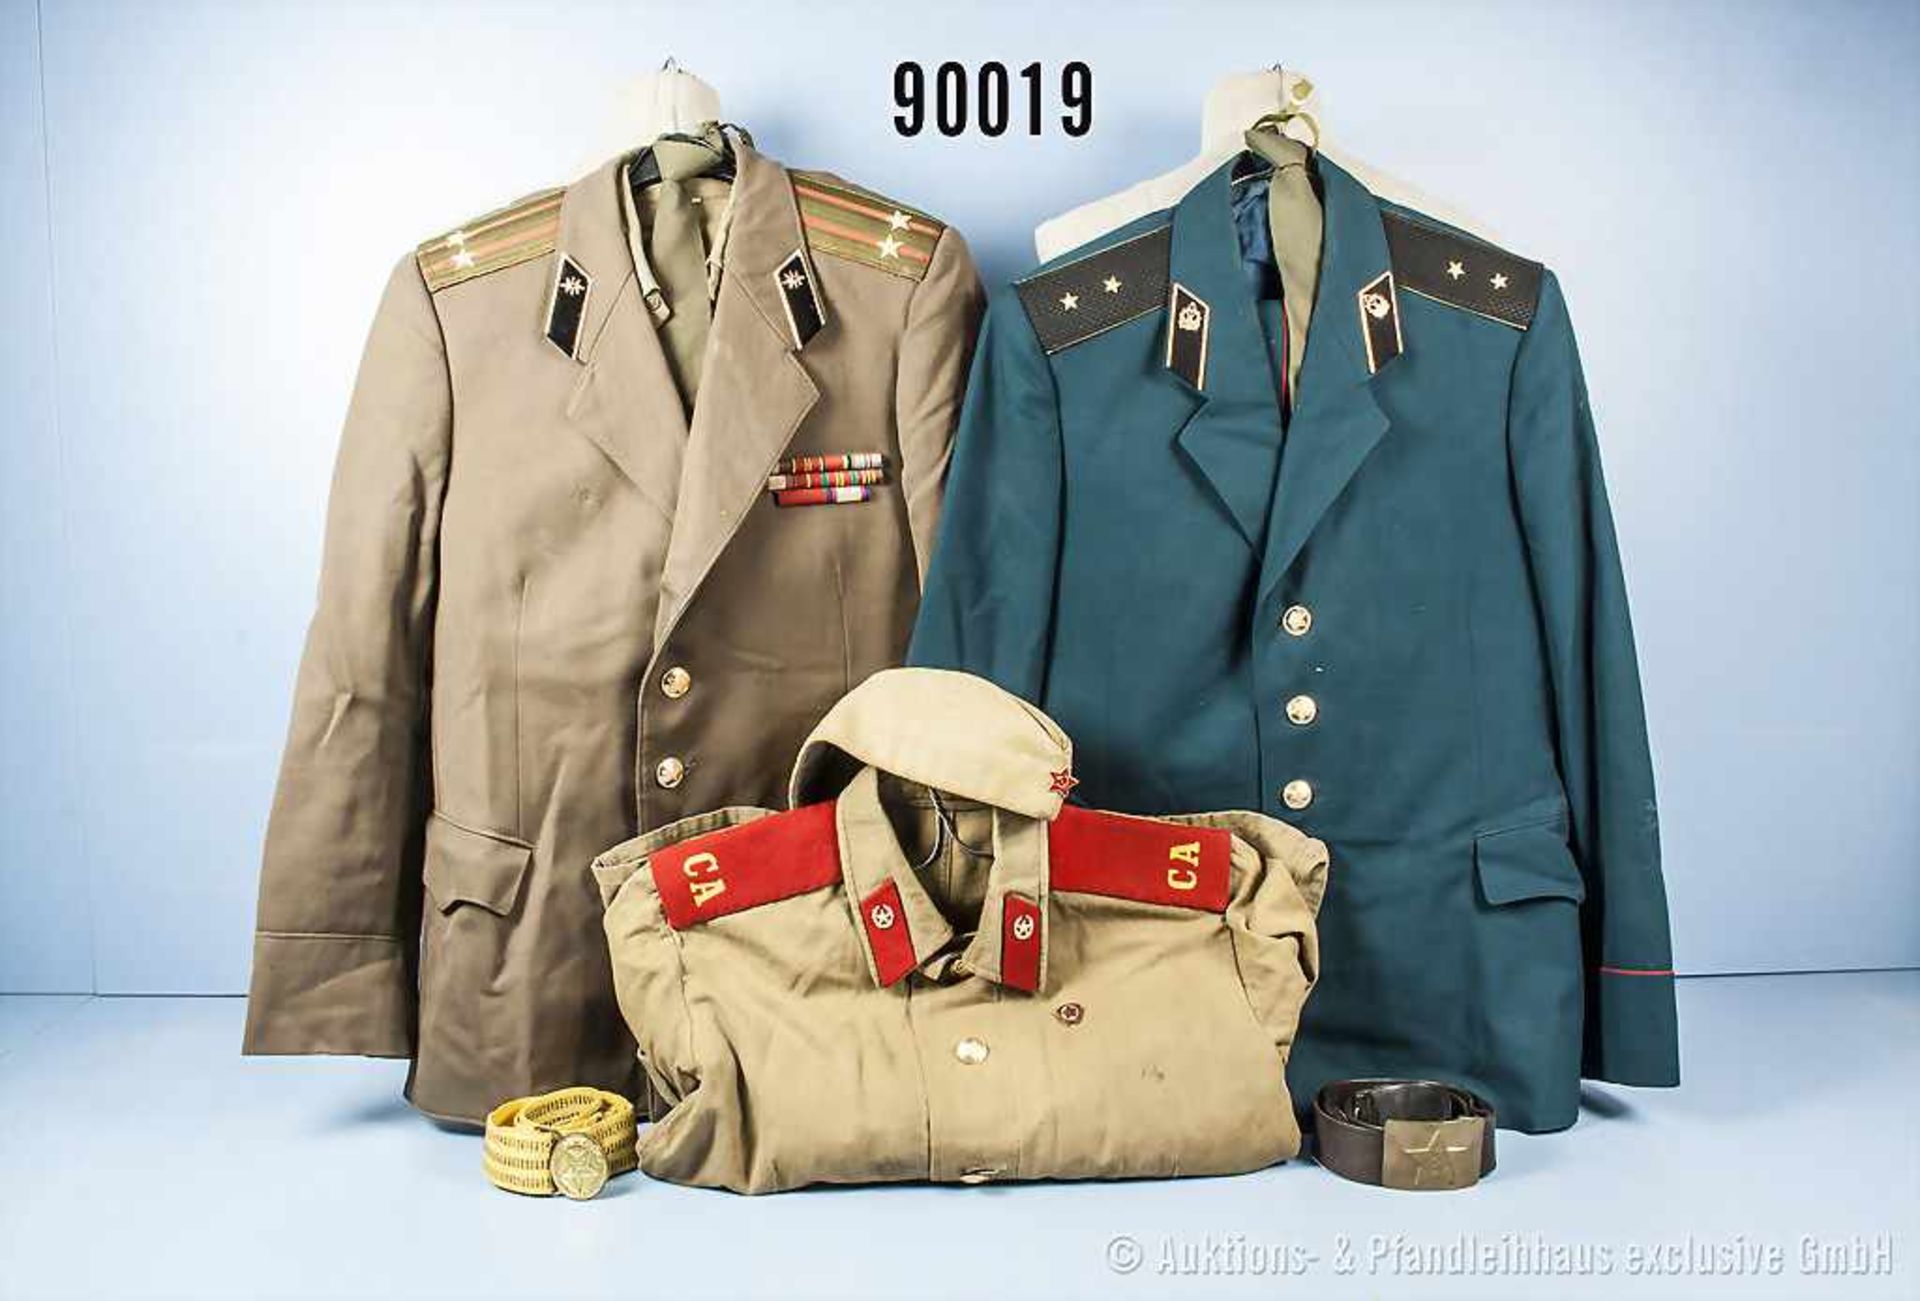 Sowjetunion/Russland, sehr umfangreiches Konvolut Uniformen, u.a. ca. 21 Uniformjacken, - Bild 2 aus 2